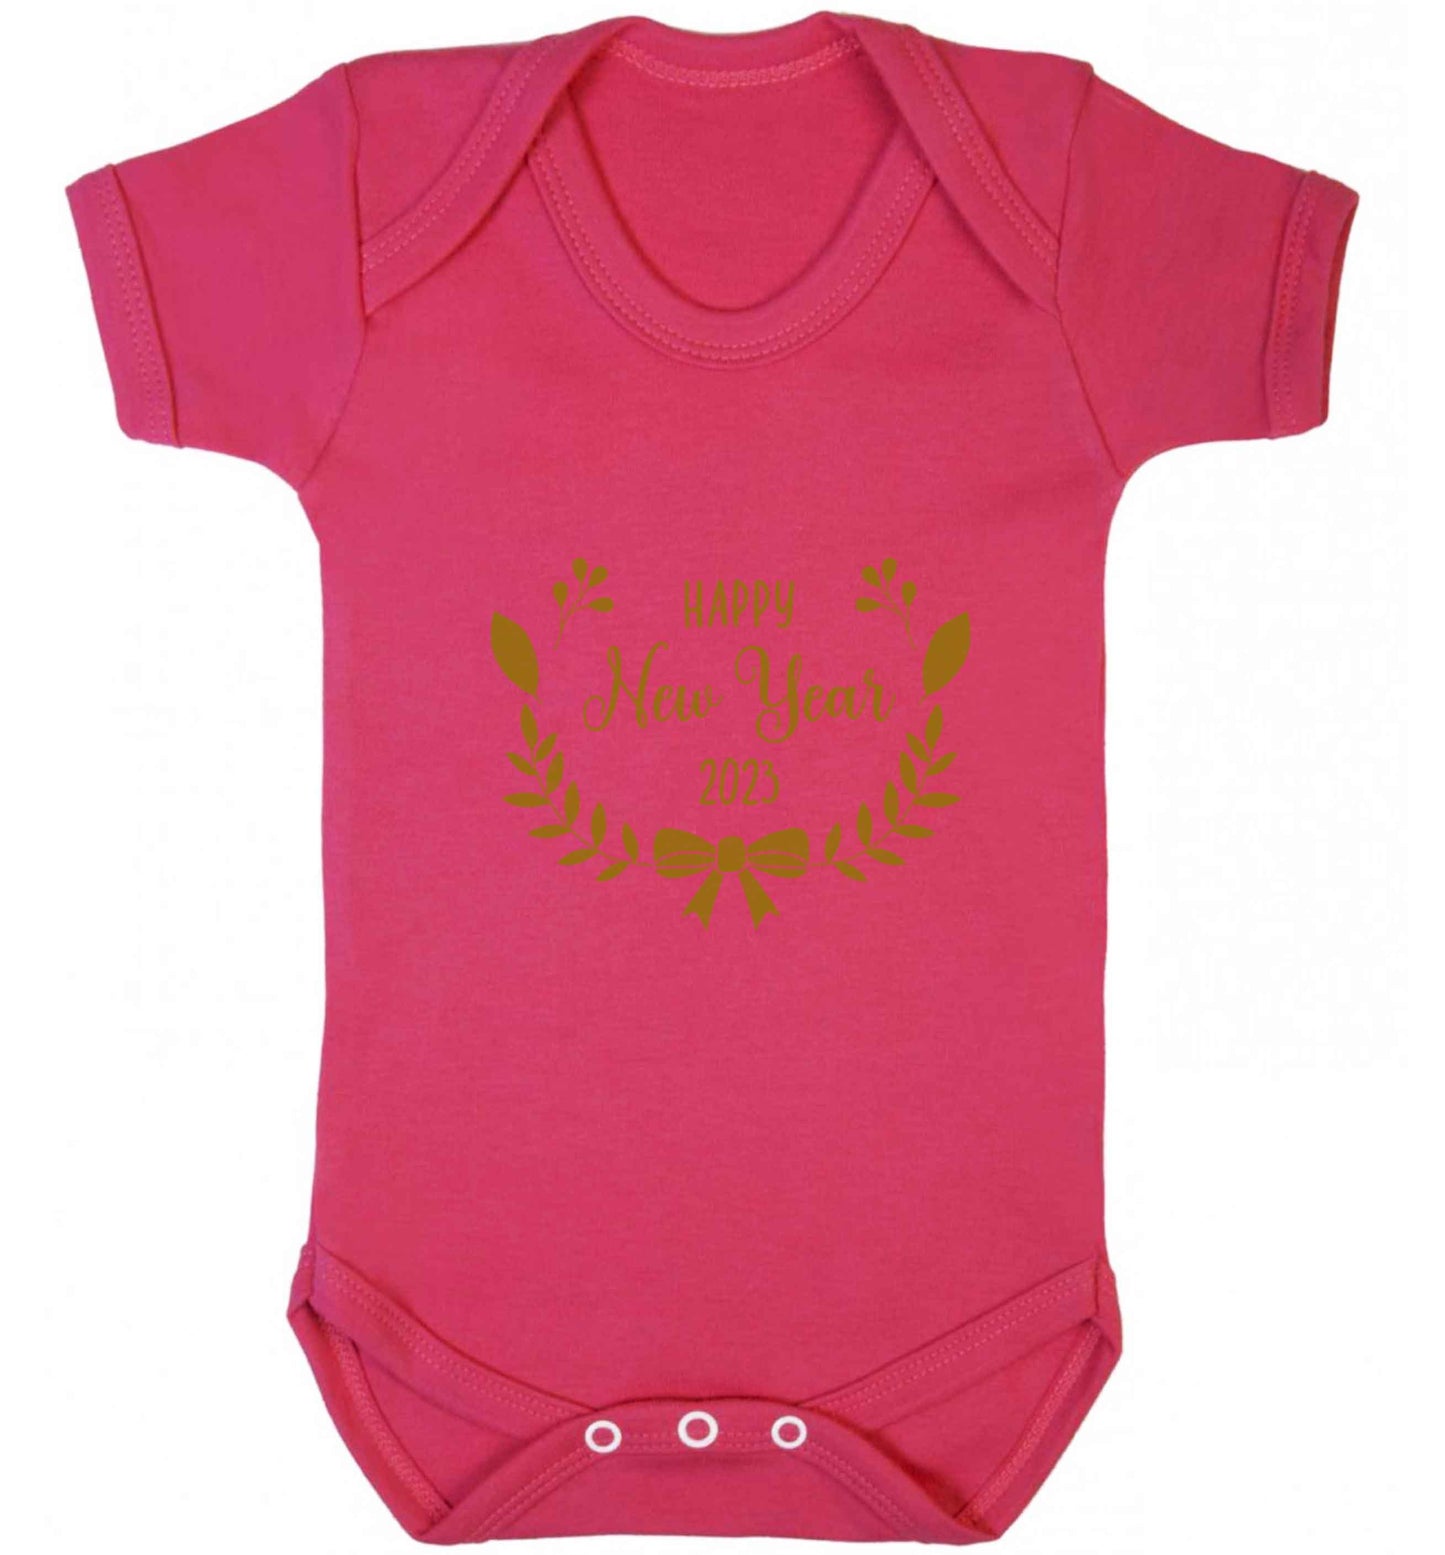 Happy New Year 2023 baby vest dark pink 18-24 months